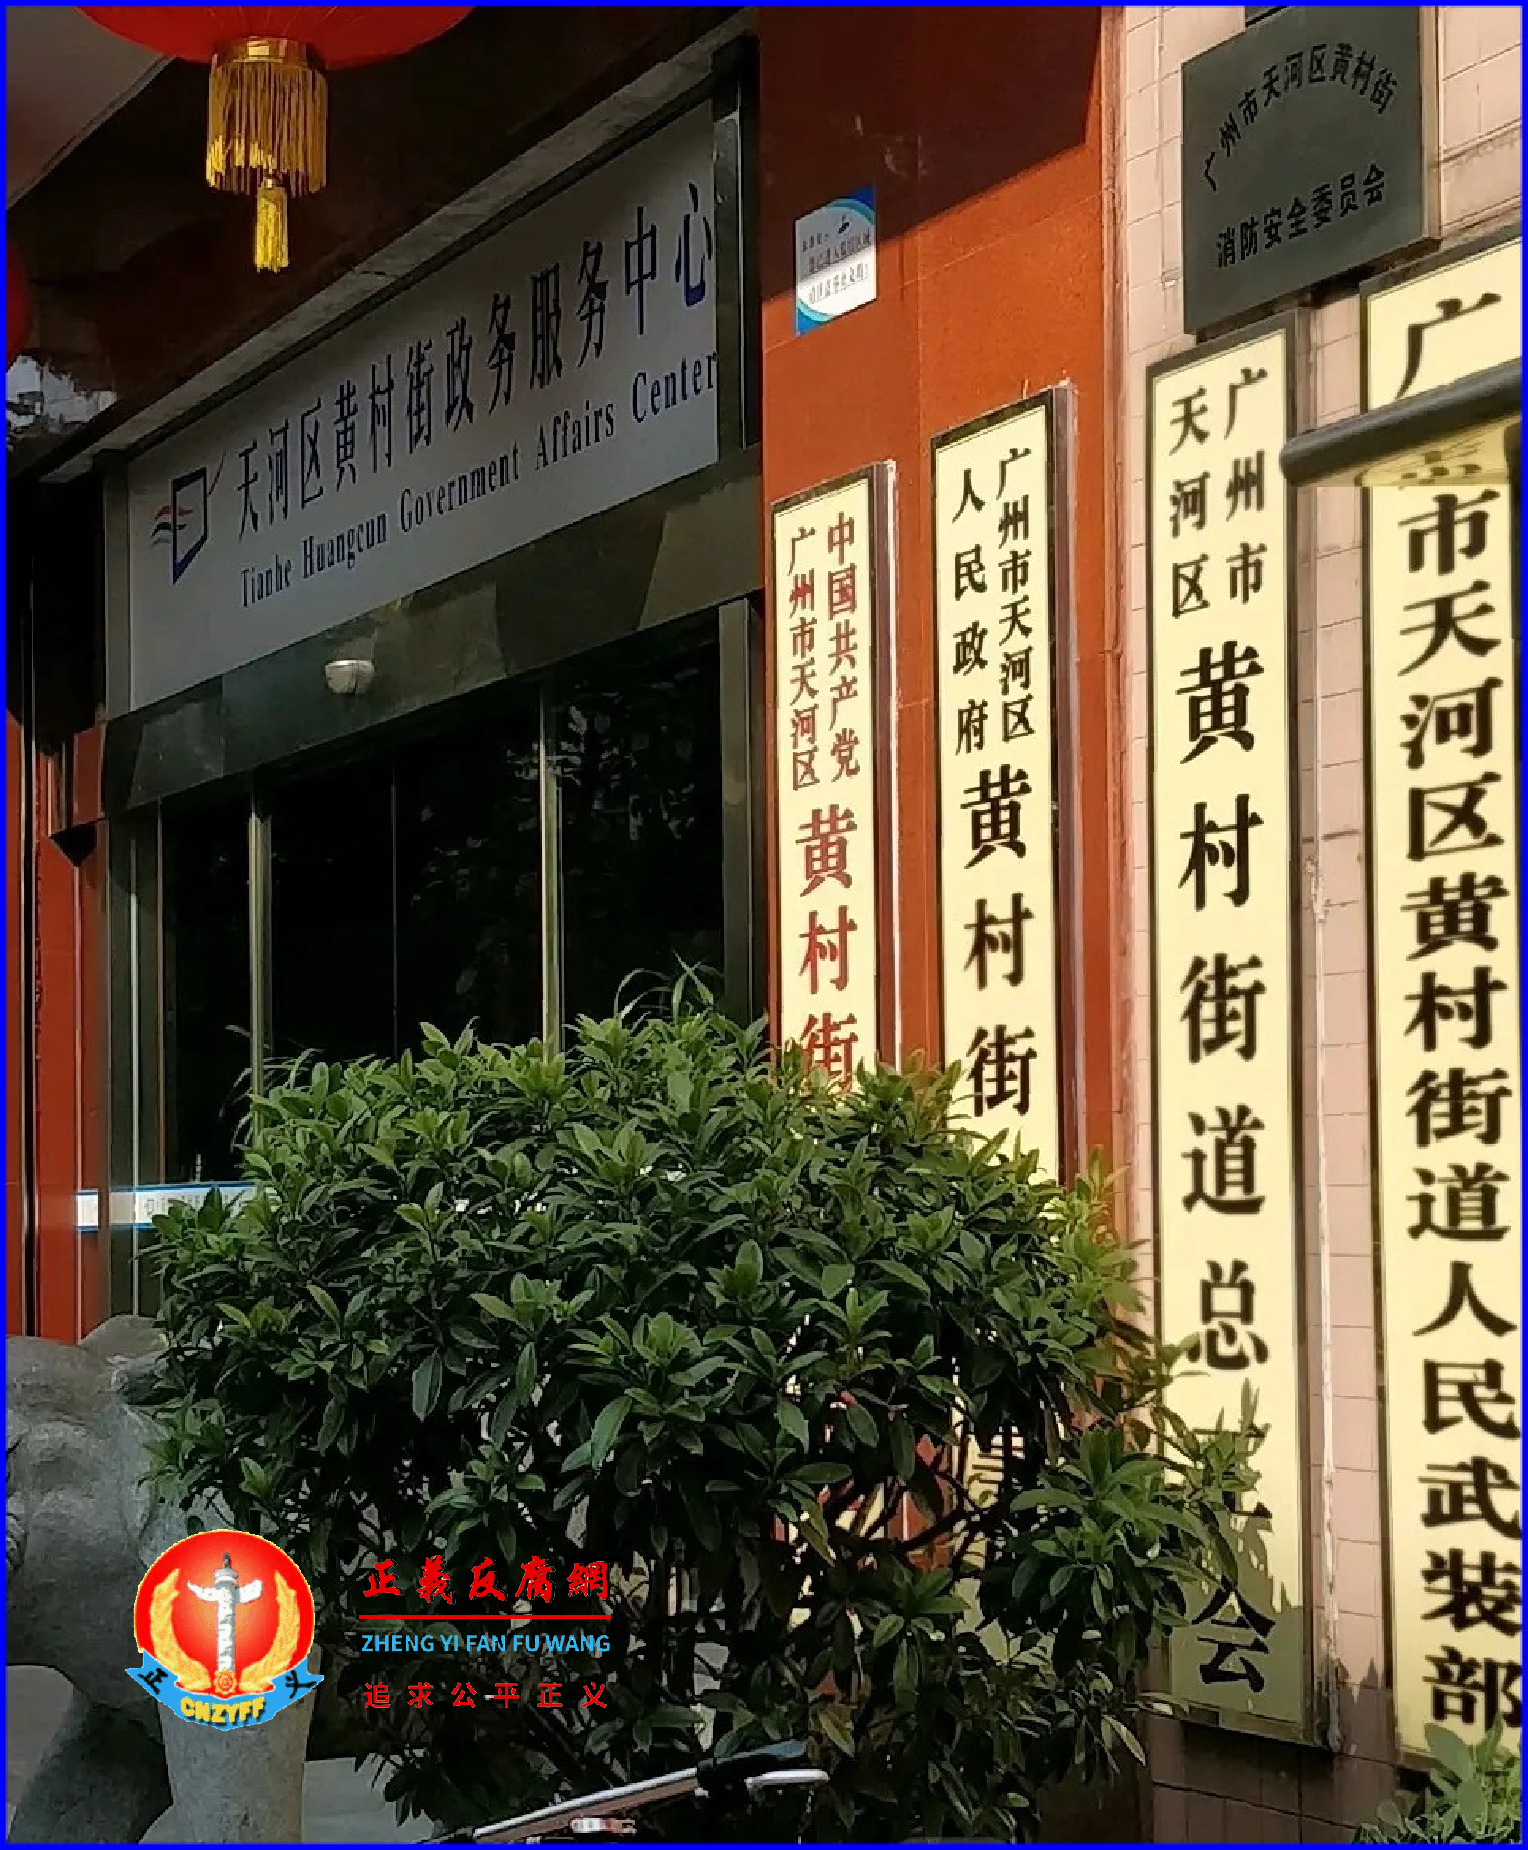 广州市天河区人民政府黄村街道办事处。.png